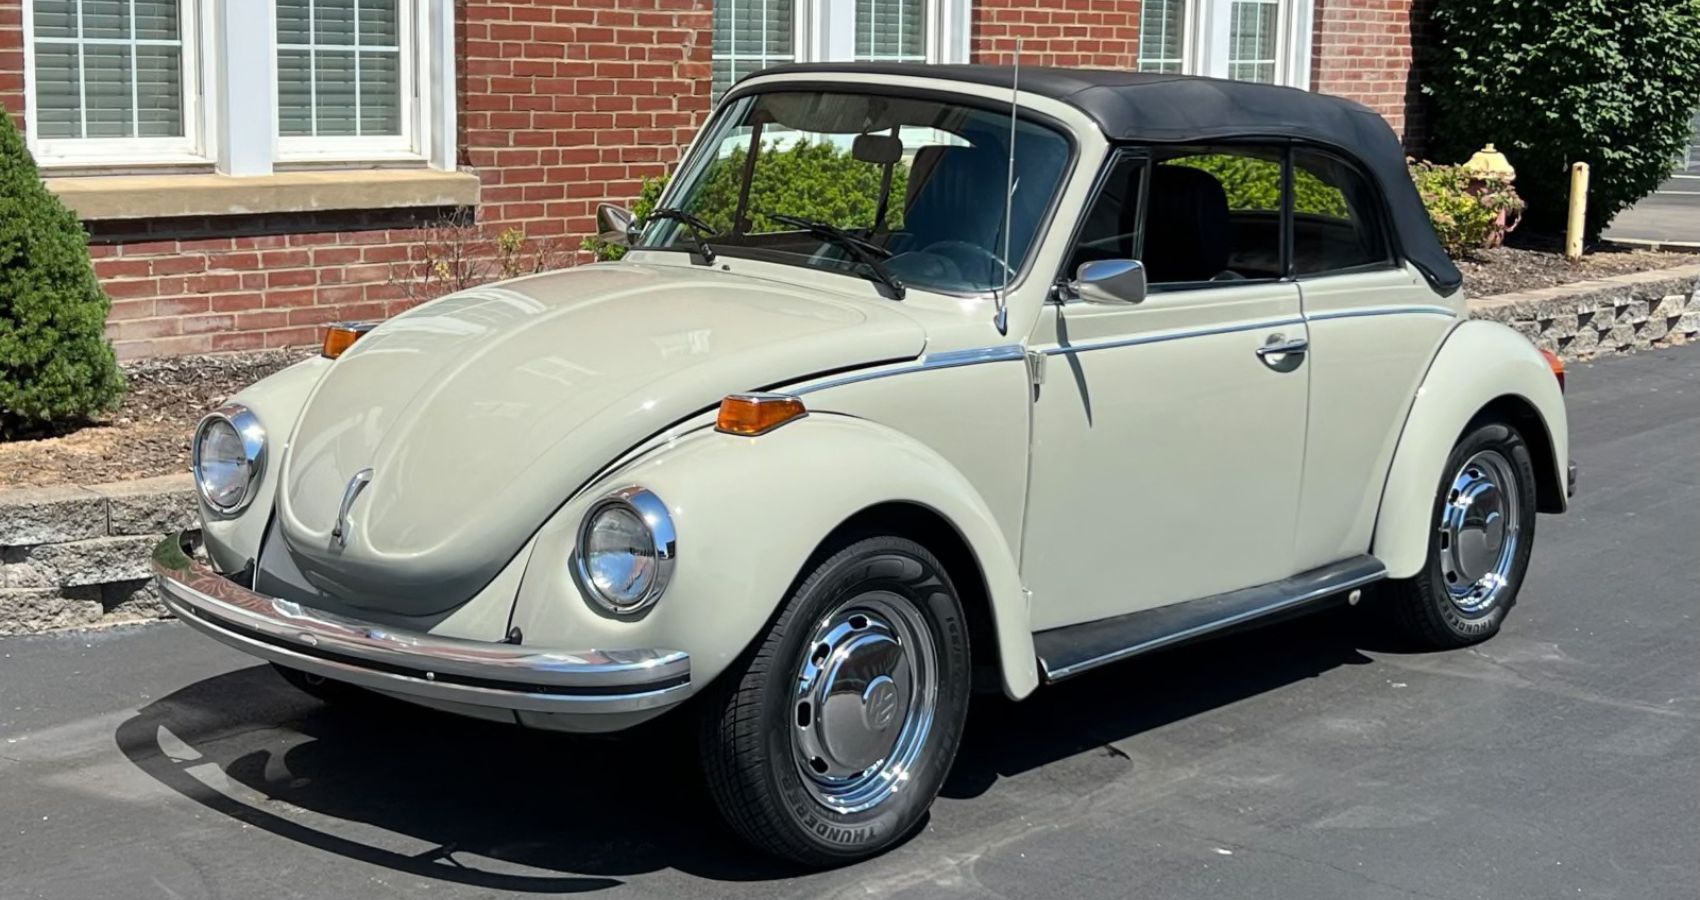 1973 Volkswagen Super Beetle Convertible parked